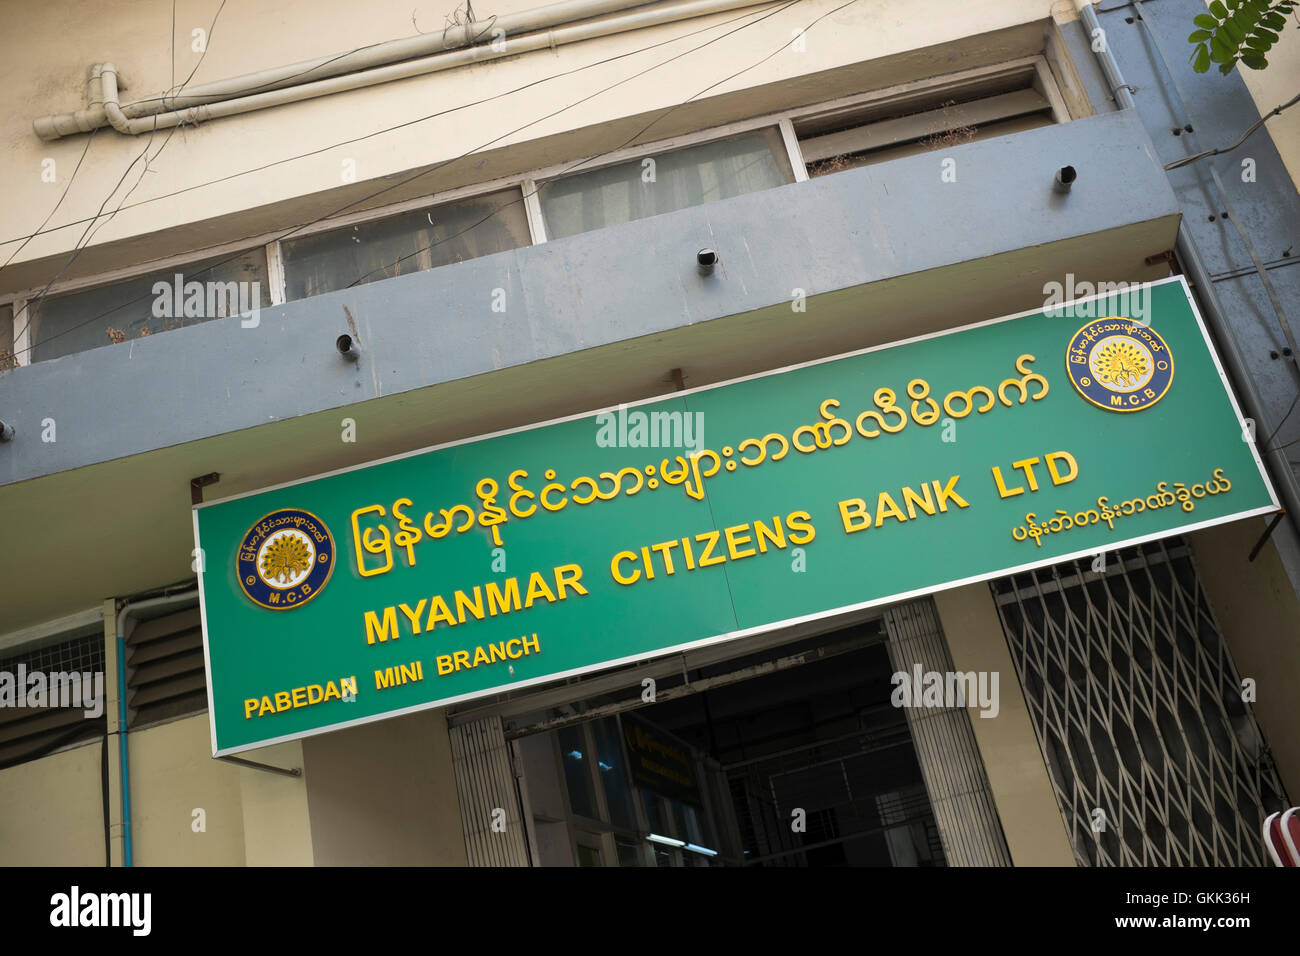 Myanmar Citizens Bank Ltd Yangon Stock Photo